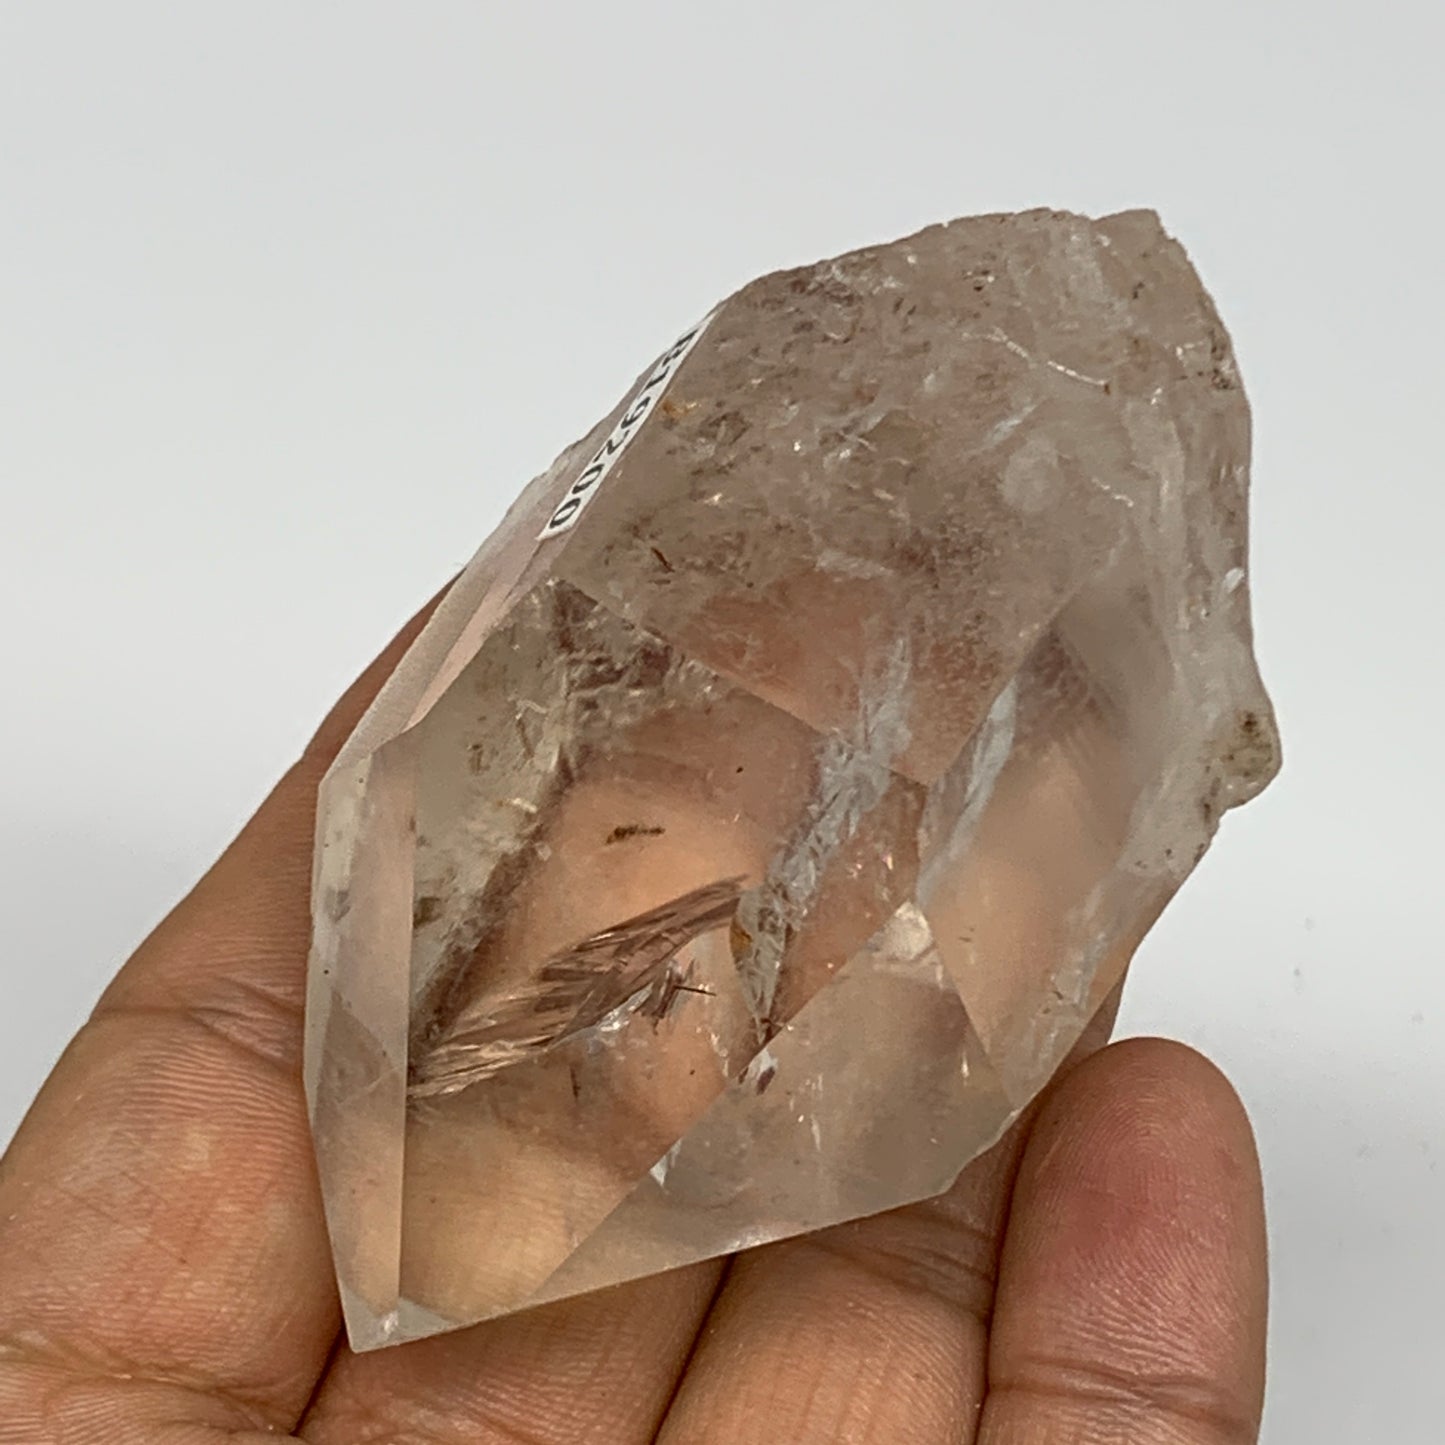 125.7g, 2.8"x1.6"x1.4", Lemurian Quartz Crystal Mineral Specimens @Brazil, B1920